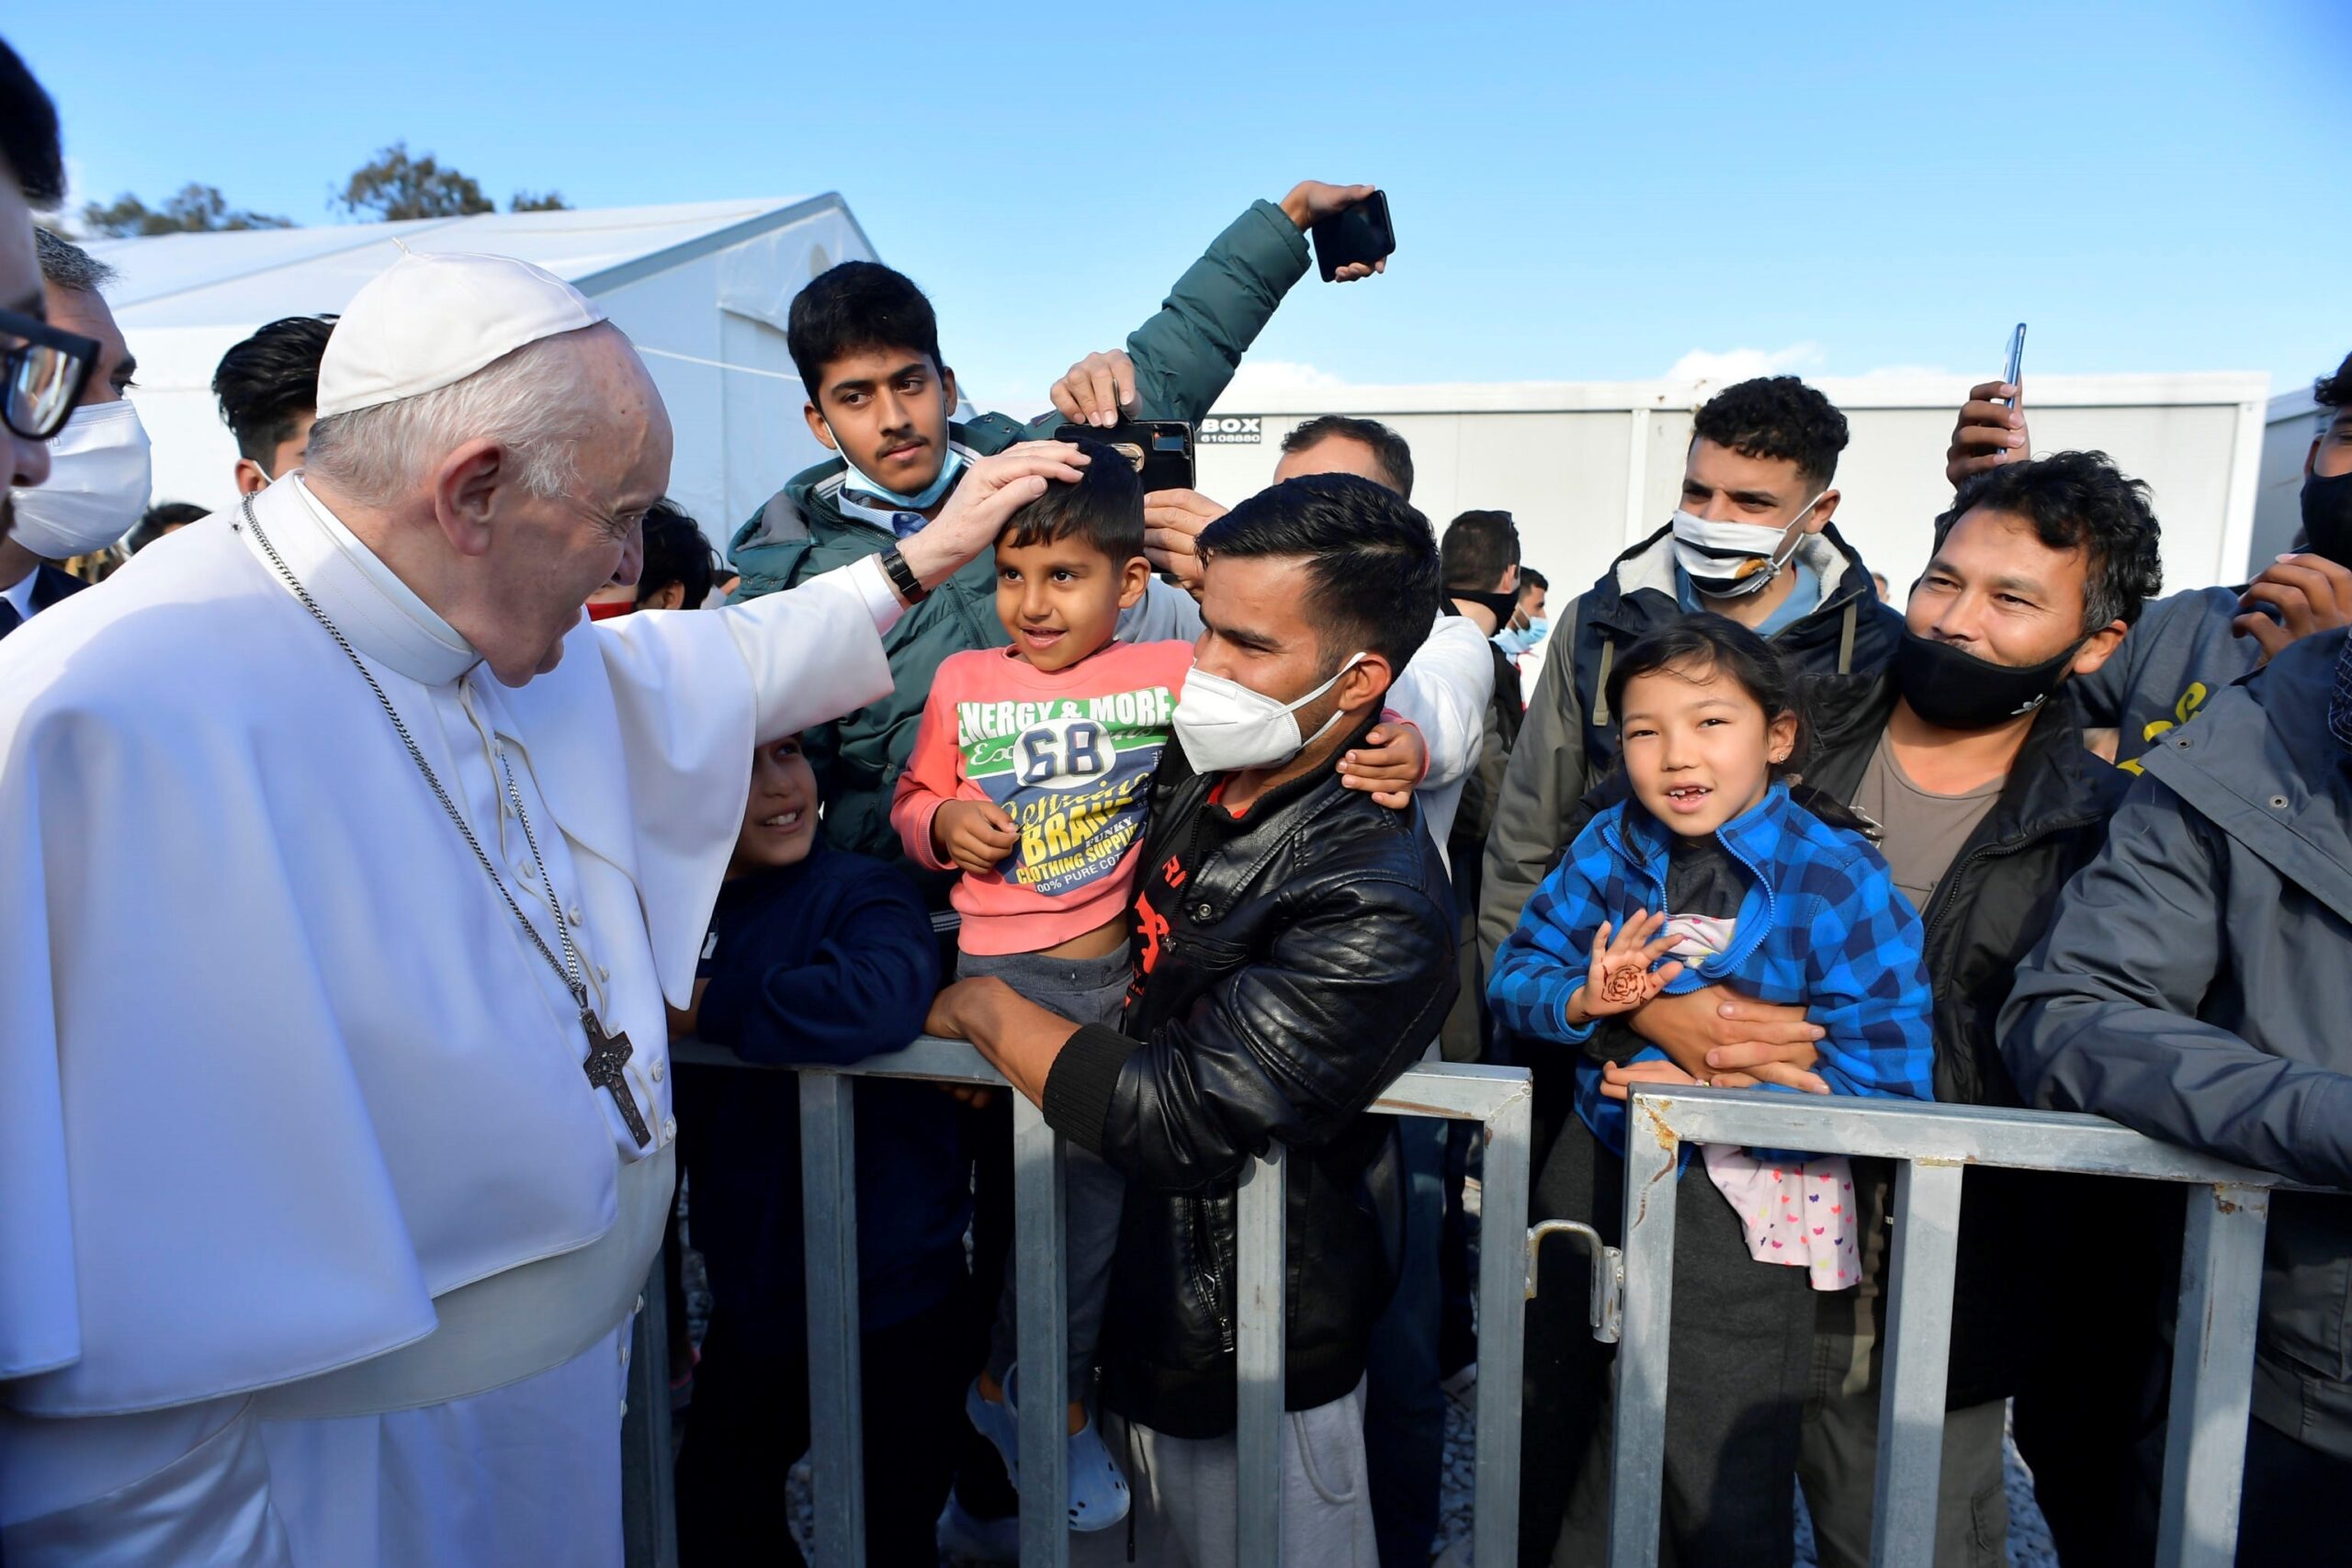 El papa Francisco, en Lesbos: “Detengamos este naufragio de civilización”